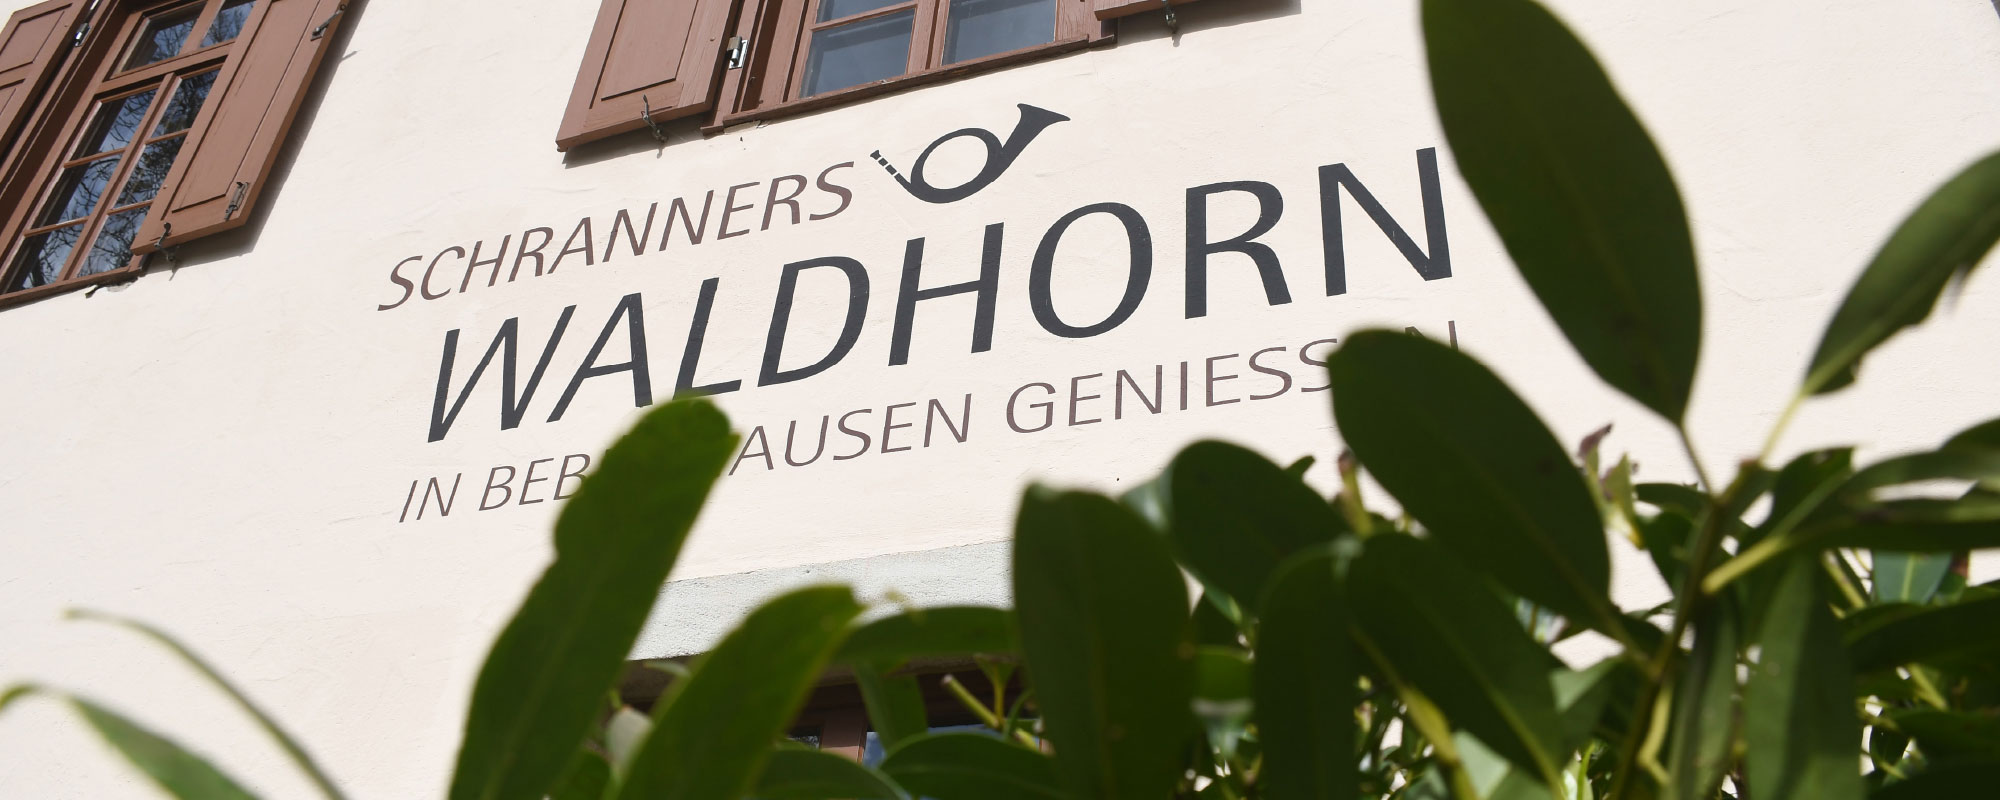 Schranners Waldhorn – in Bebenhausen genießen